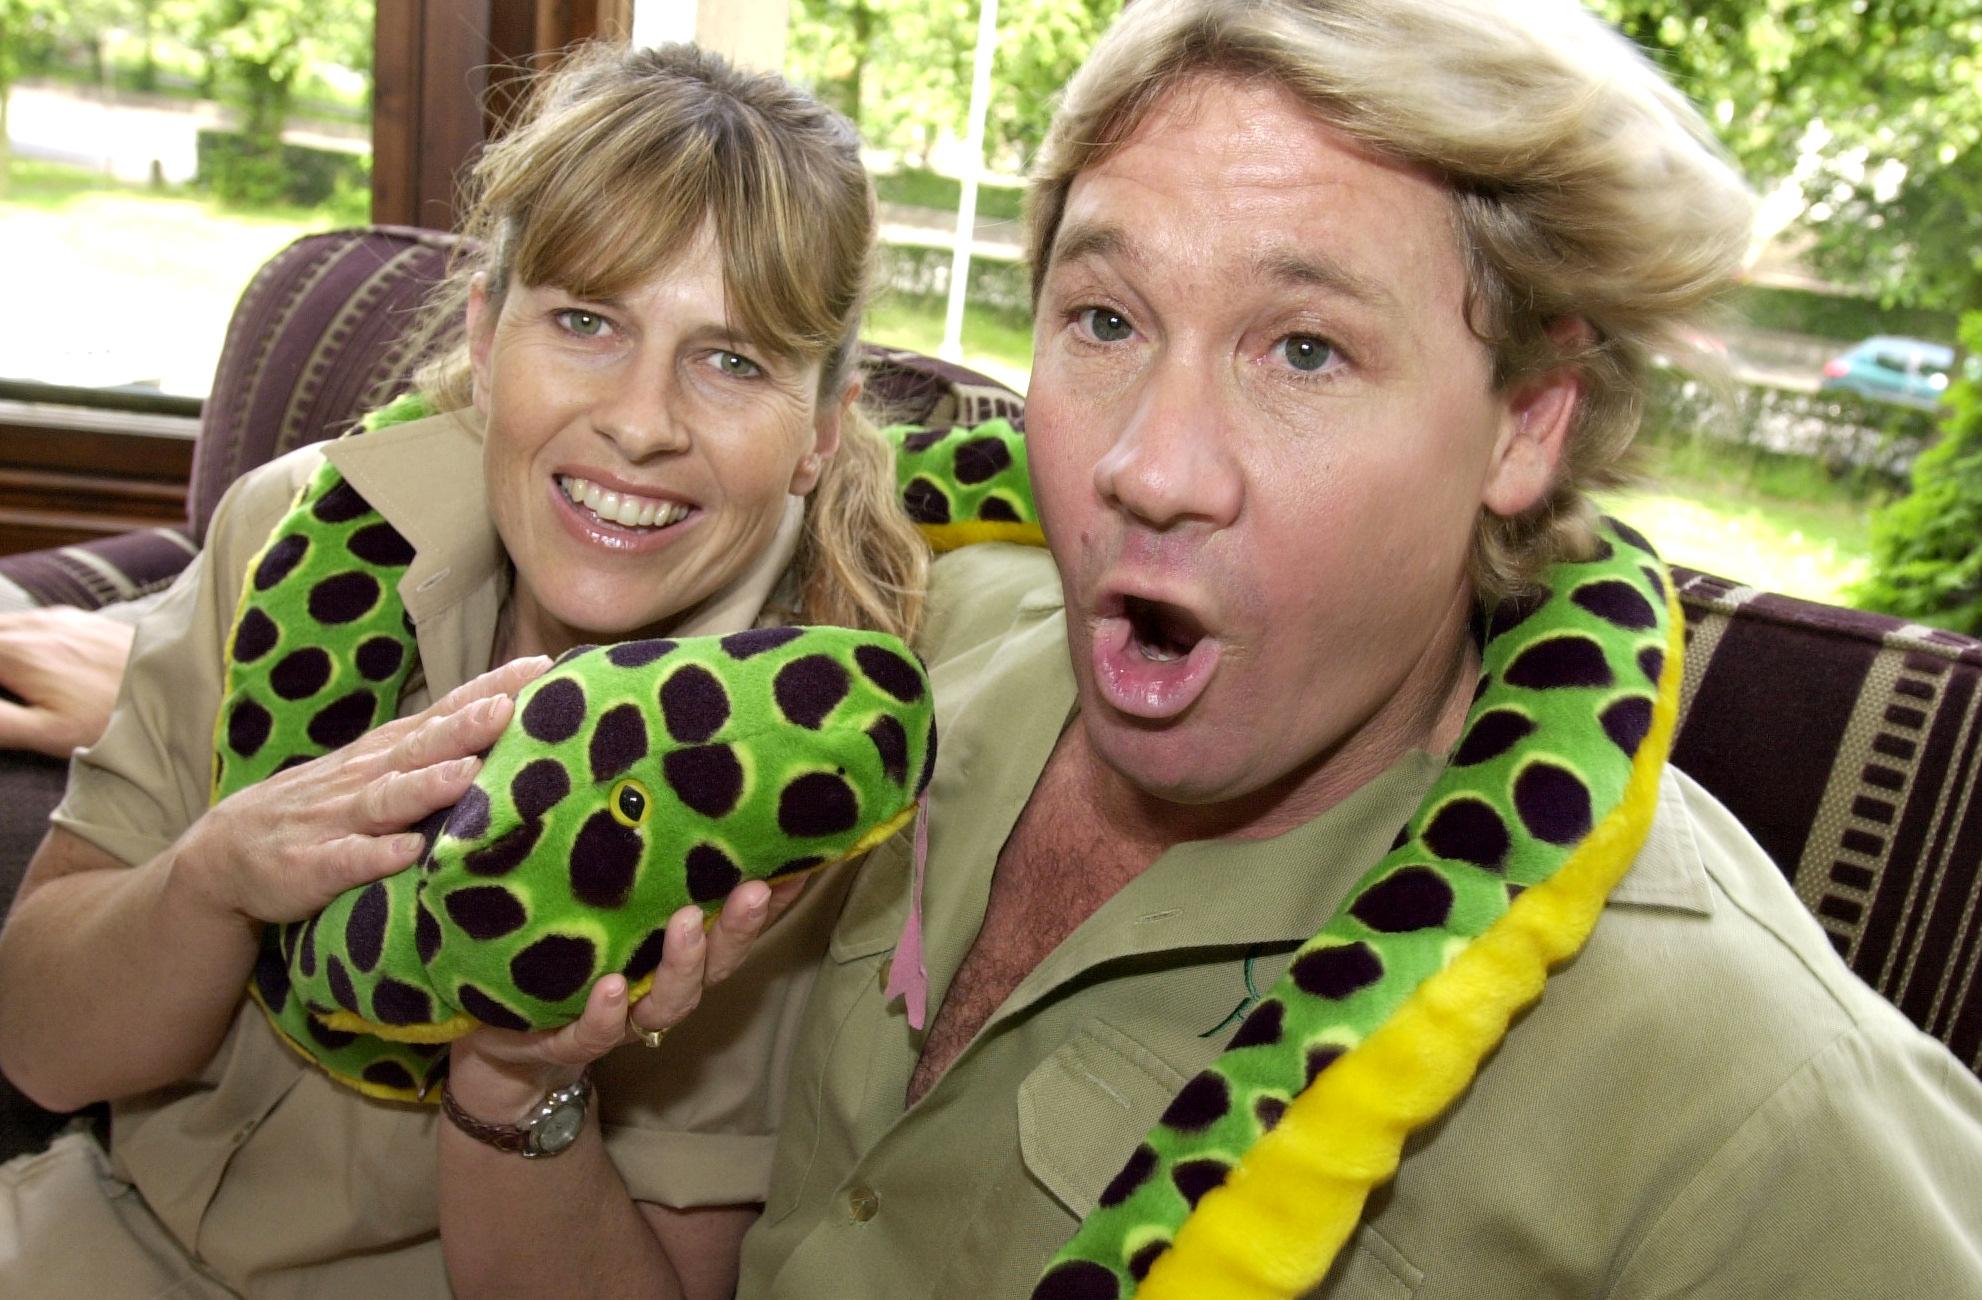 Terri Irwin & Steve Irwin with toy snake in July 2002